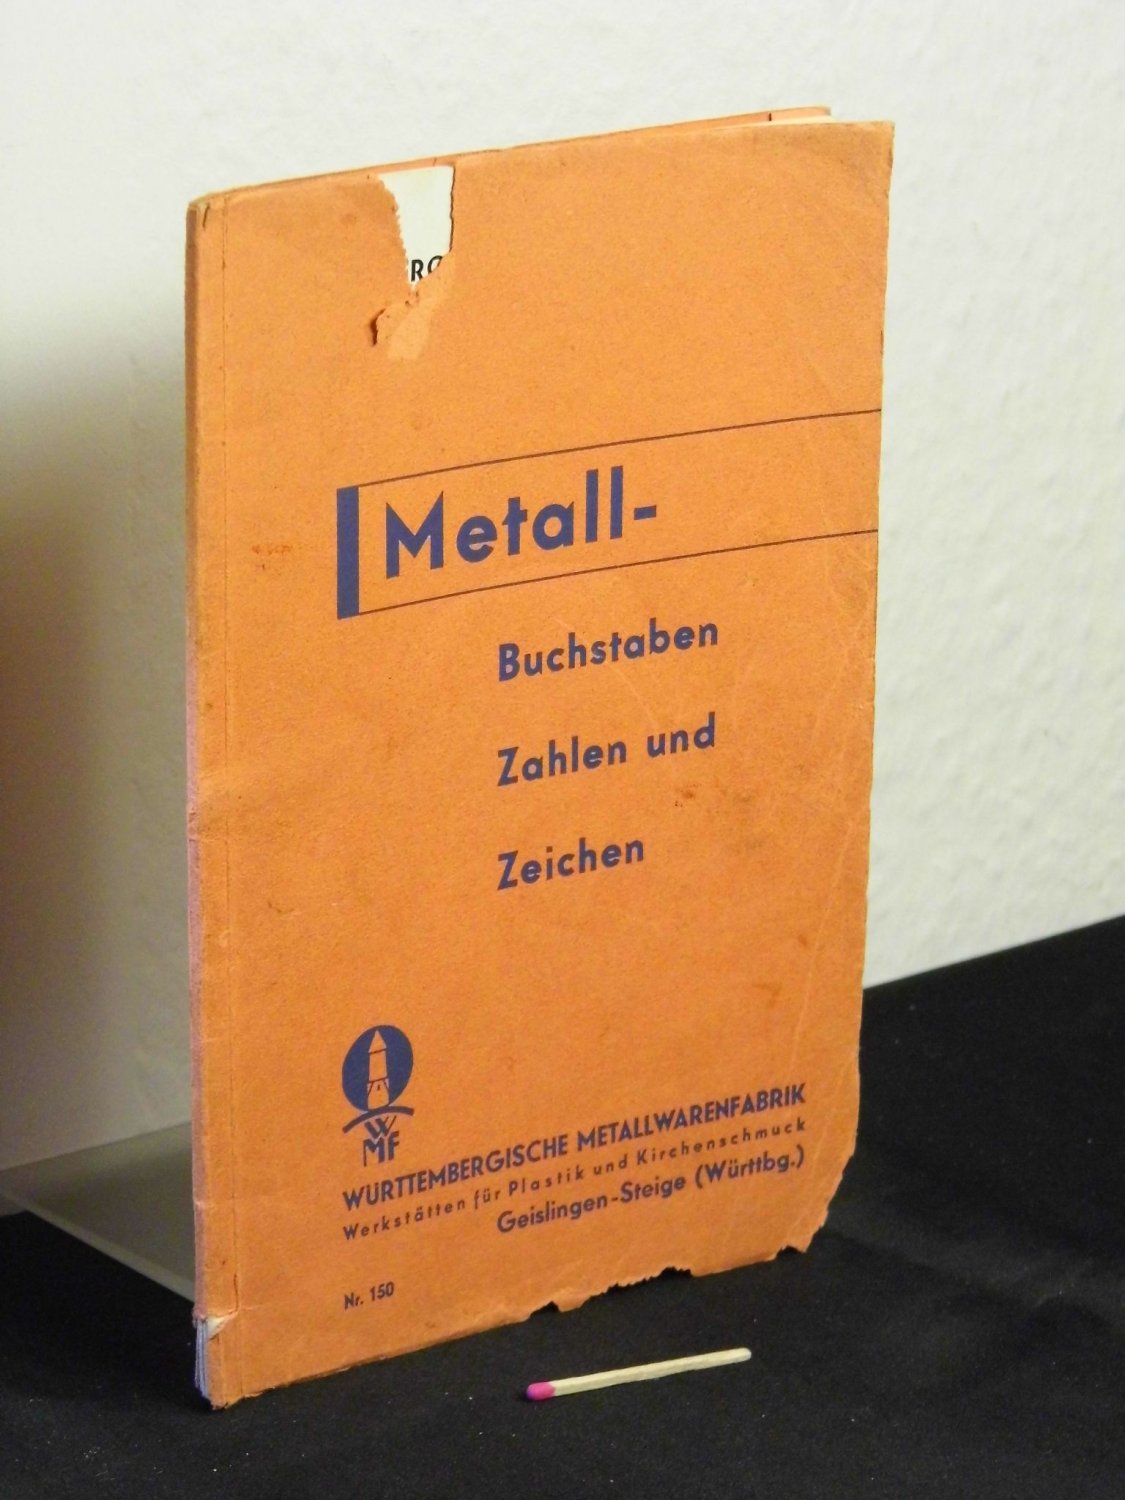 https://images.booklooker.de/x/03081045_MTk0ODM=/W%C3%BCrttembergische-Metallwarenfabrik-WMF+Metall-Buchstaben-Zahlen-und-Zeichen-1933-Katalog-Nr-150-und.jpg